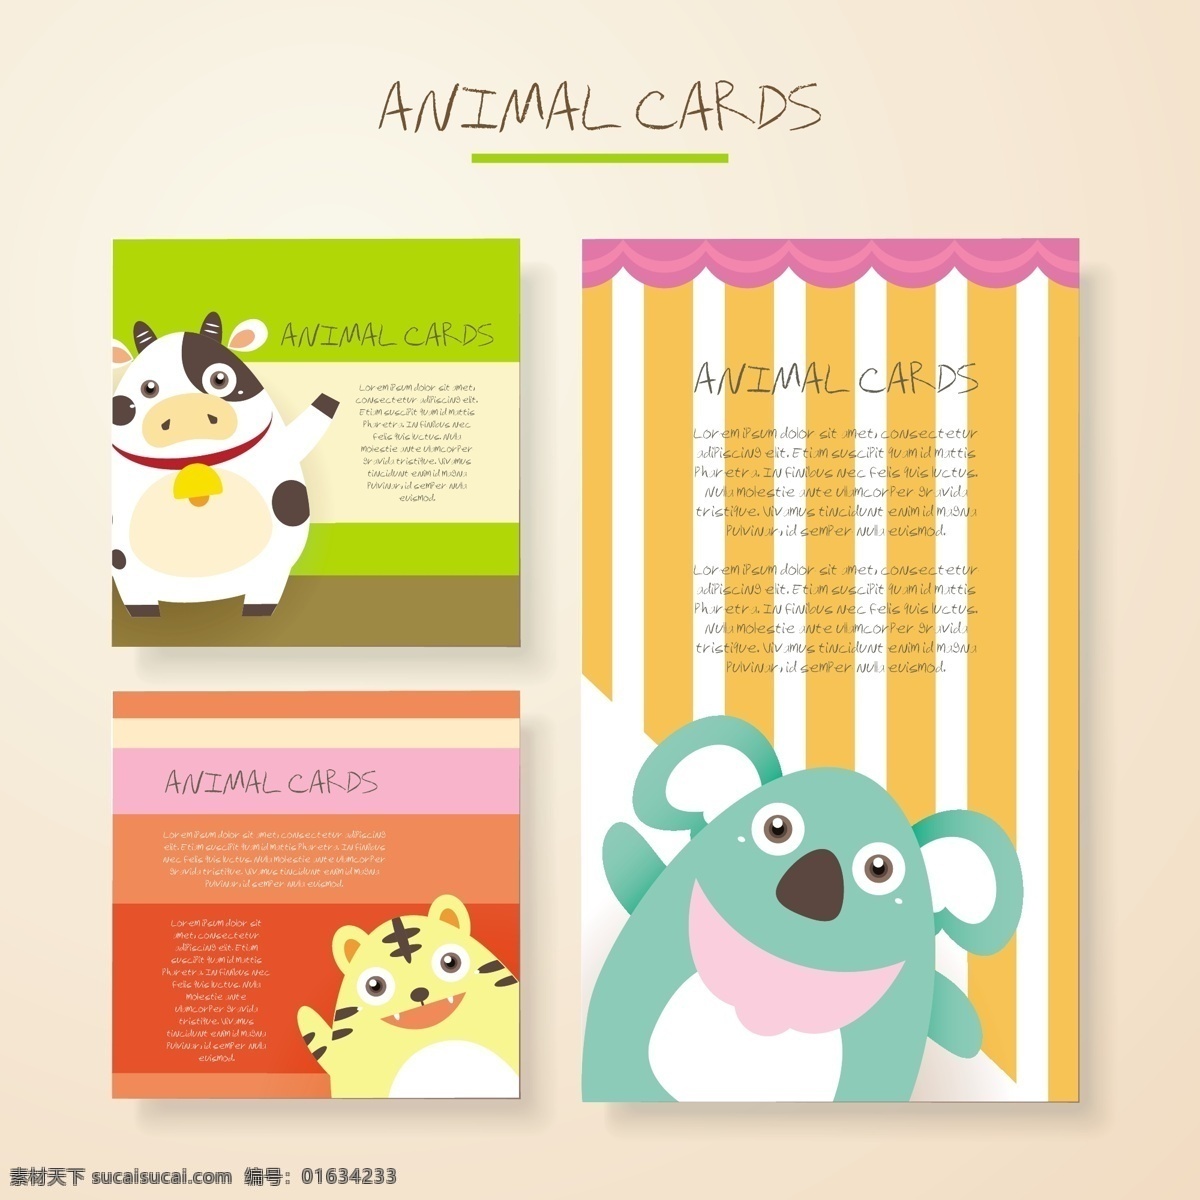 可爱 卡通 动物 卡片 矢量 老虎 无尾熊 手绘 矢量素材 平面设计素材